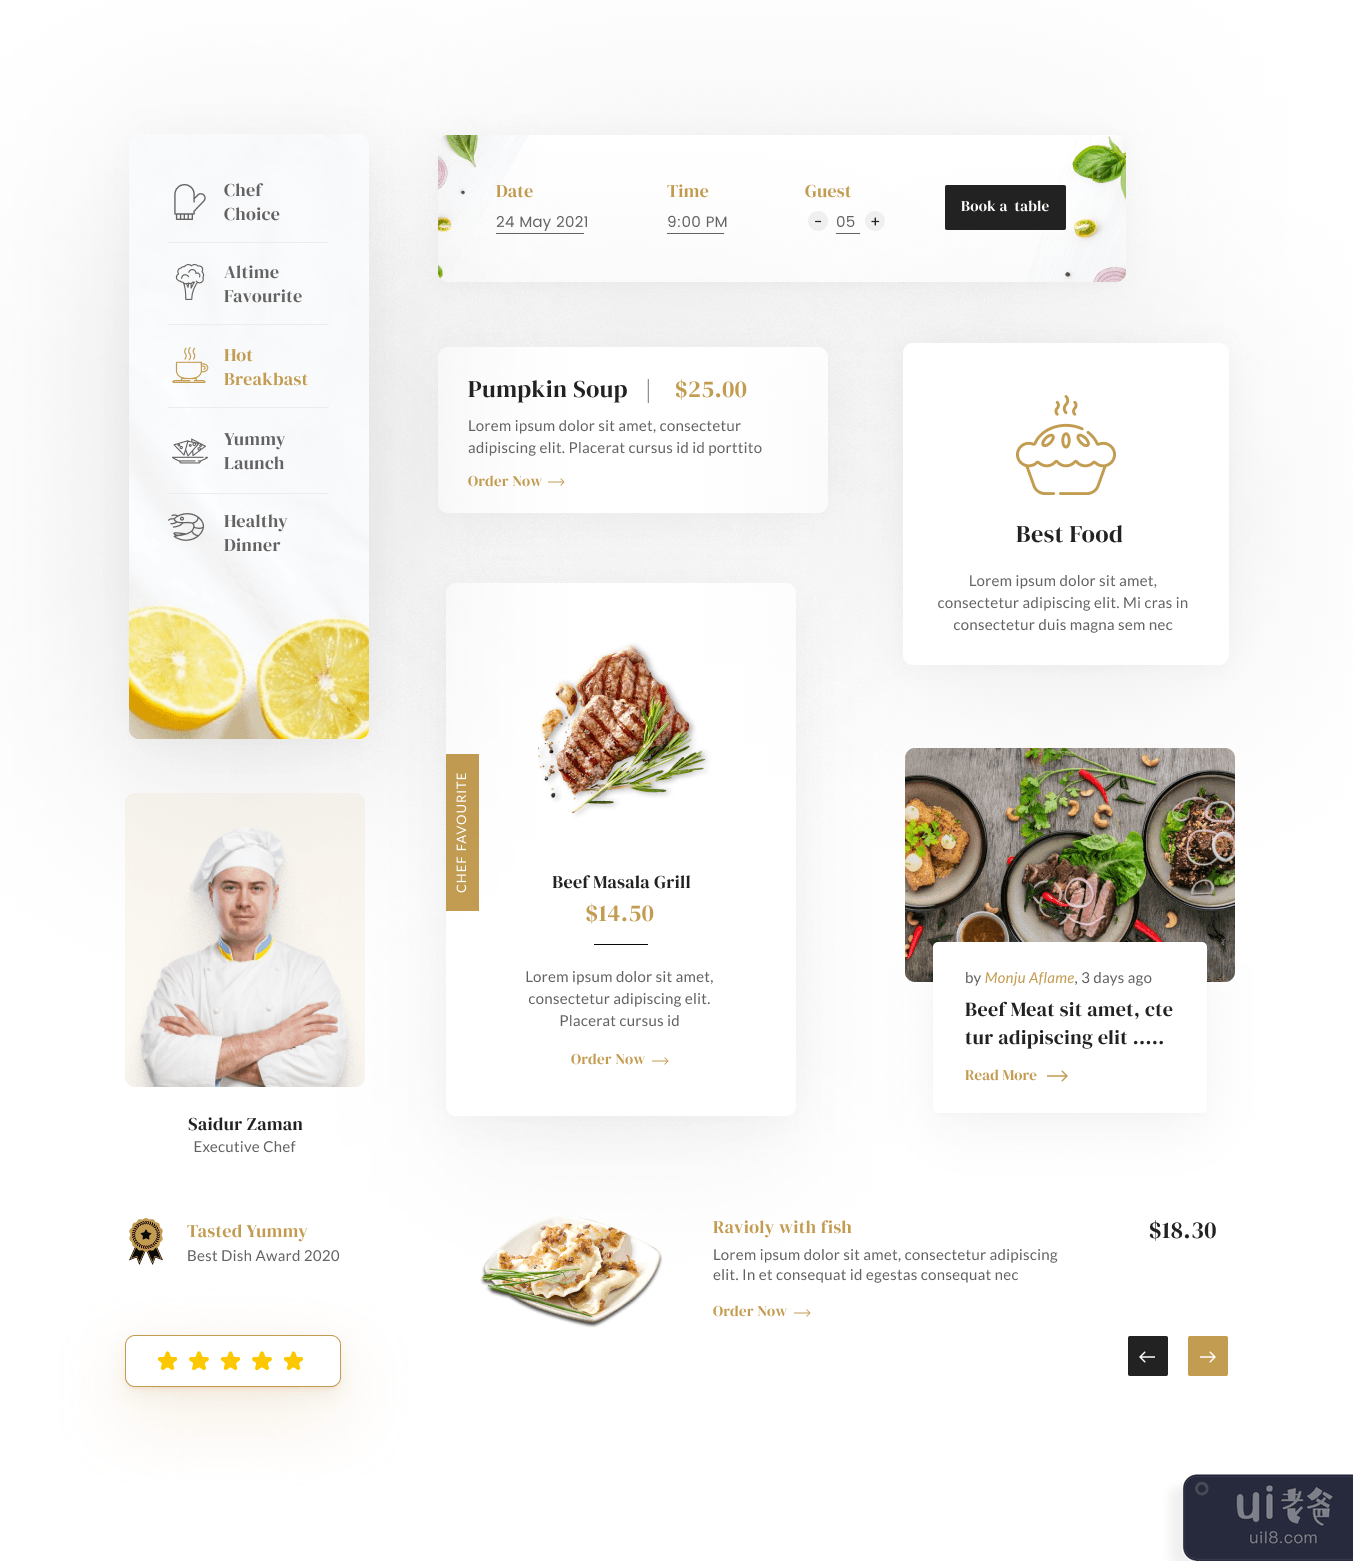 暴躁的饭菜 |餐厅登陆页面设计(Testy Meals | Restaurant Landing Page Design)插图1